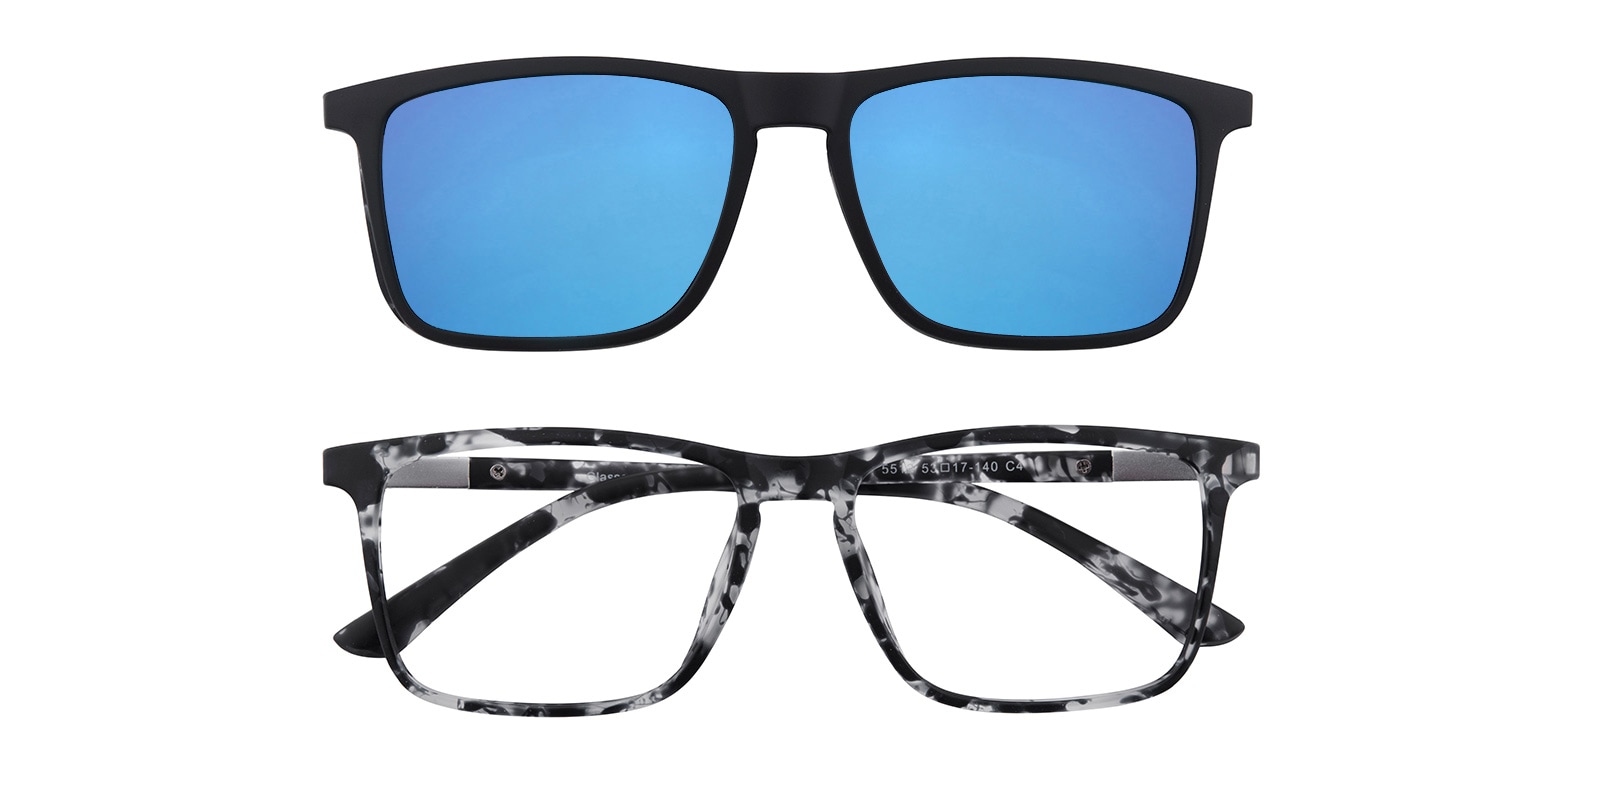 Rectangle Eyeglasses, Full Frame Black Tortoise (Blue Mirror-coating) TR90 - FP1089